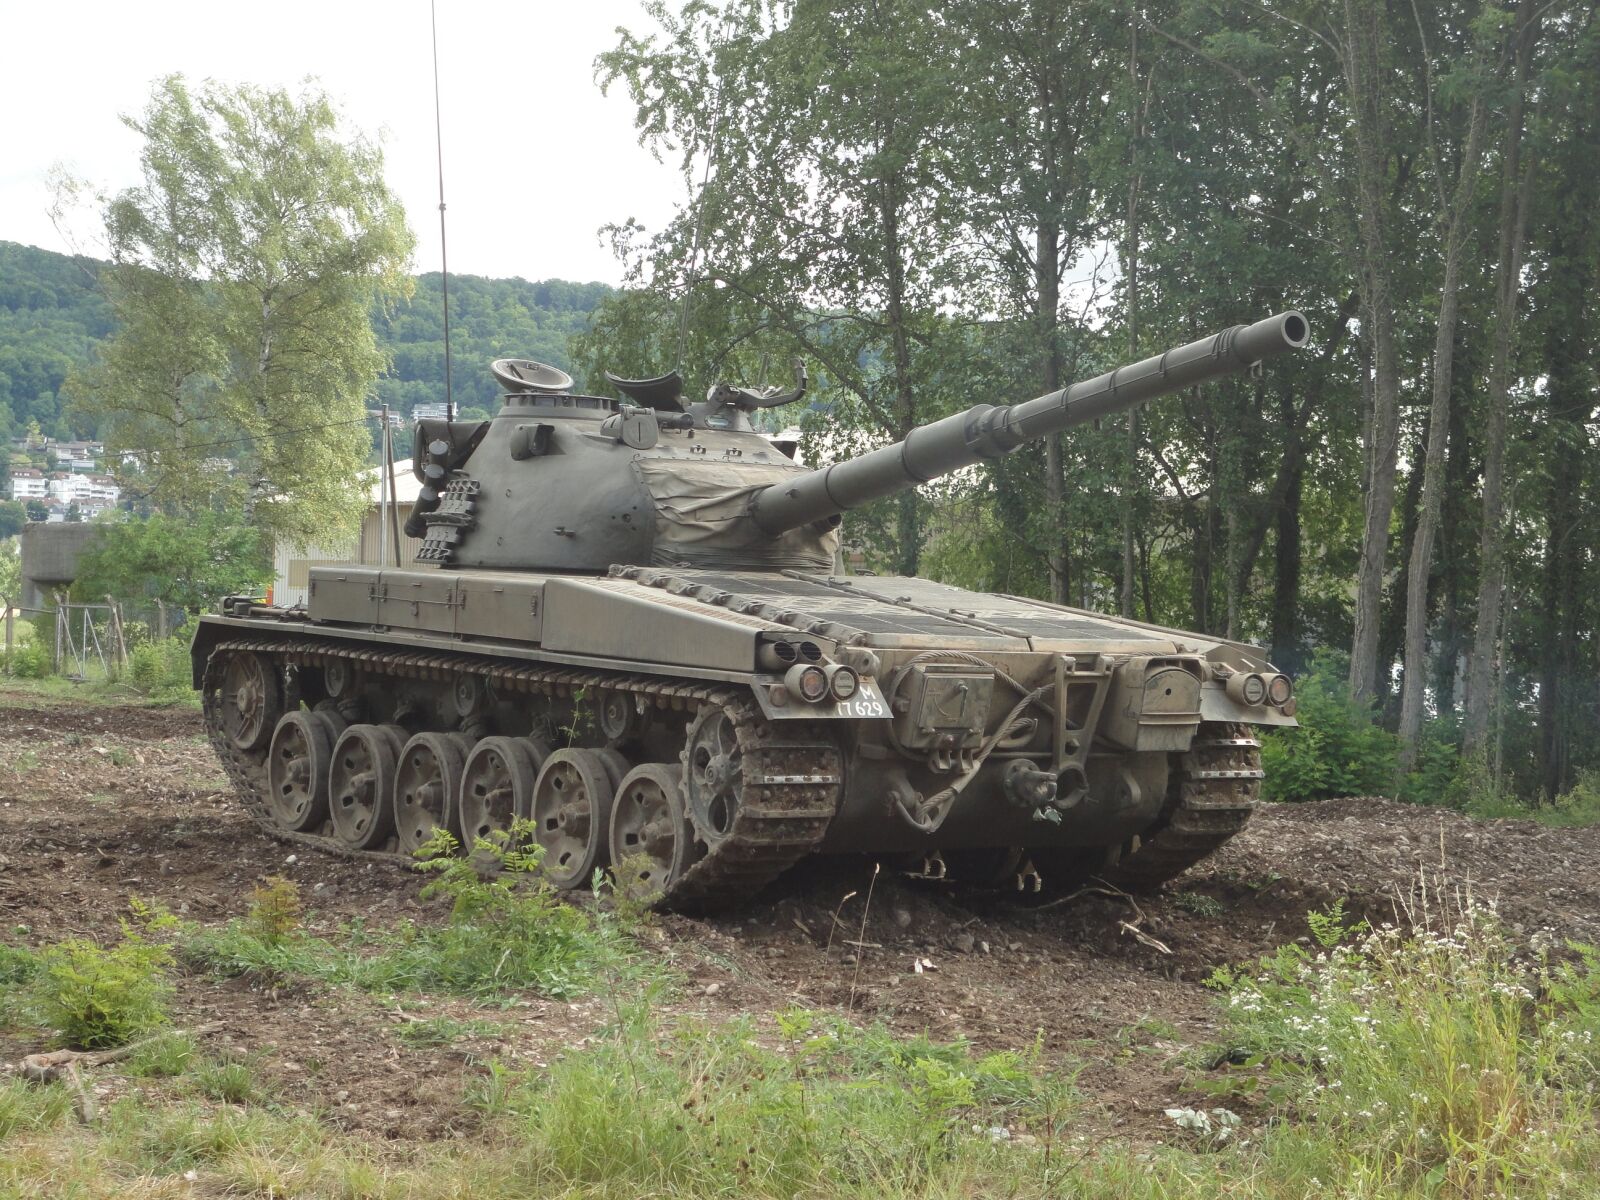 Sony Cyber-shot DSC-W560 sample photo. Panzer, tank, gun photography